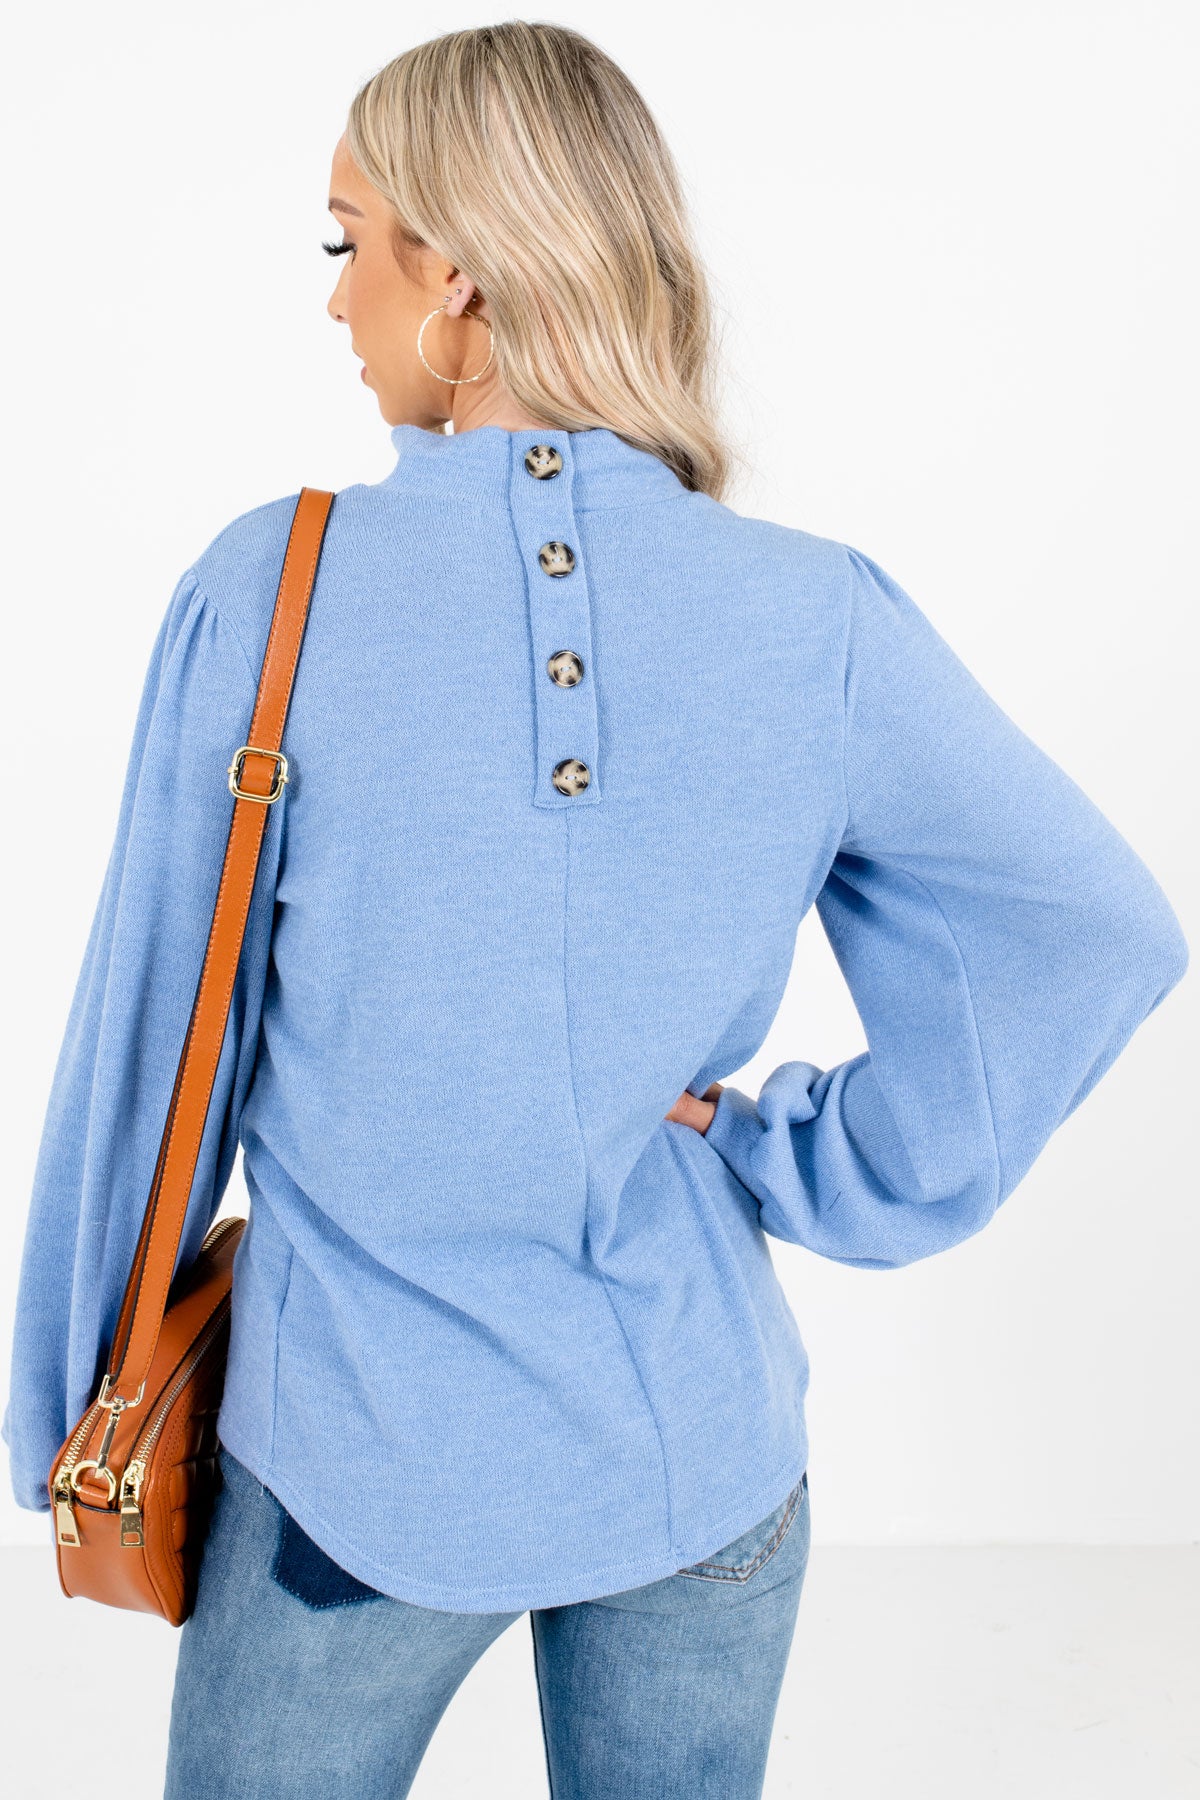 Women's Blue Button-Up Back Neckline Boutique Top